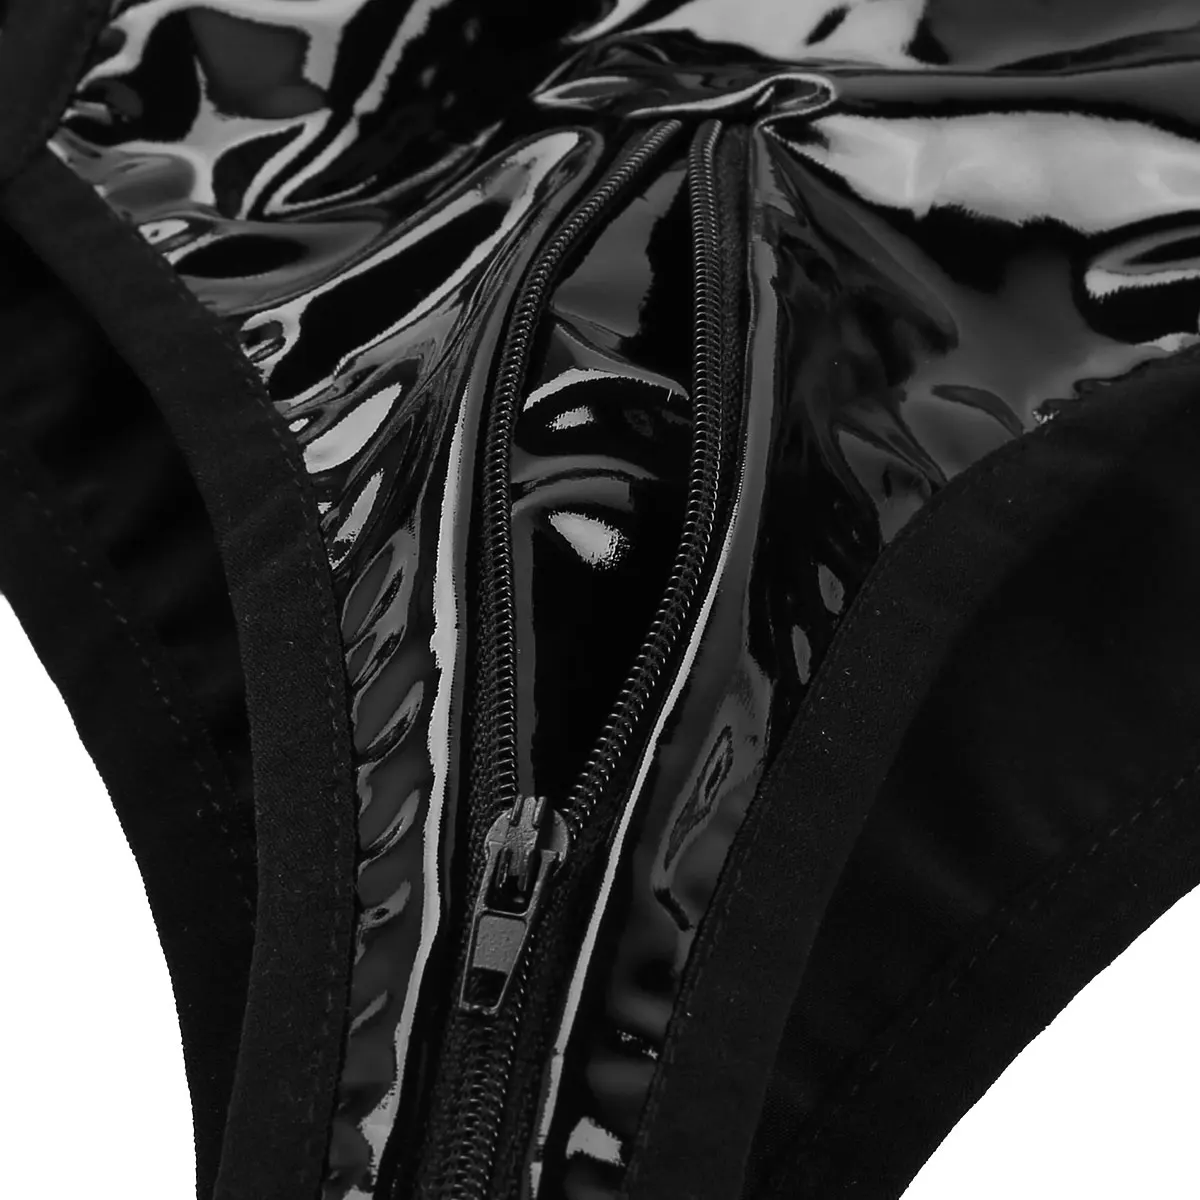 Женские горячие шорты Клубная одежда мокрого вида лакированная кожа Высокая талия молнии промежность бикини с подвязками ног